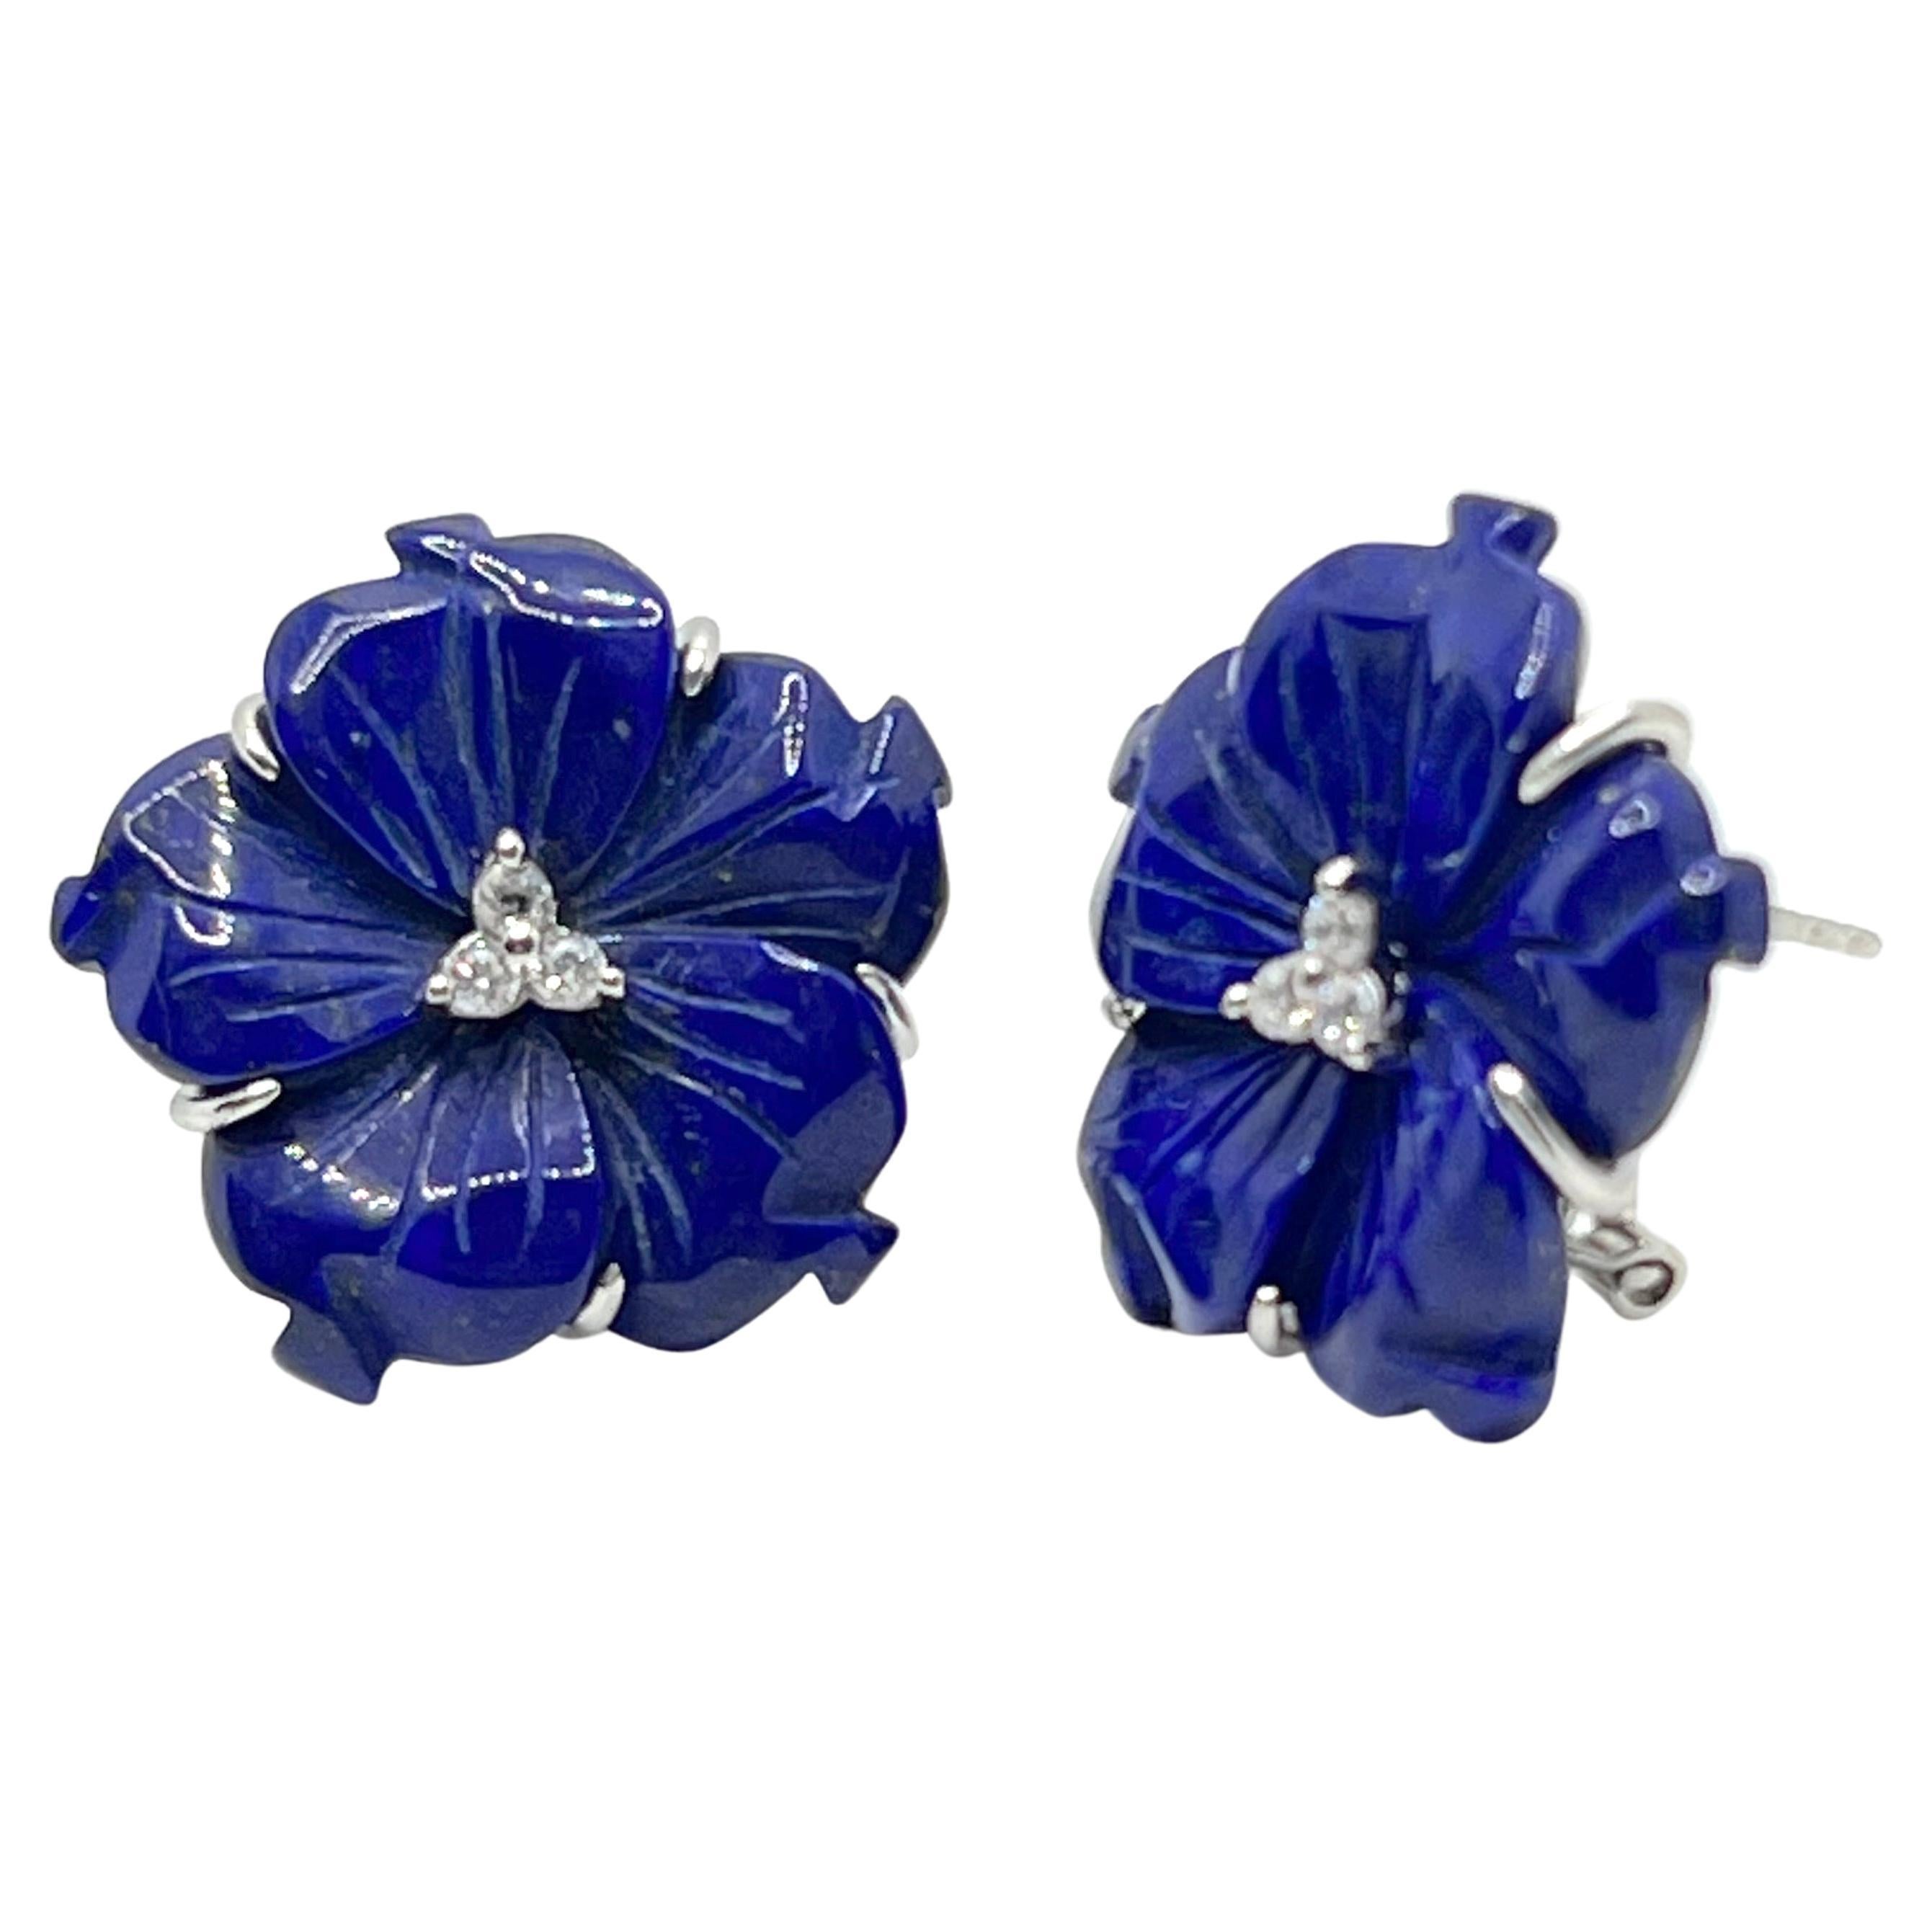 24mm Carved Lapis Lazuli Flower Earrings